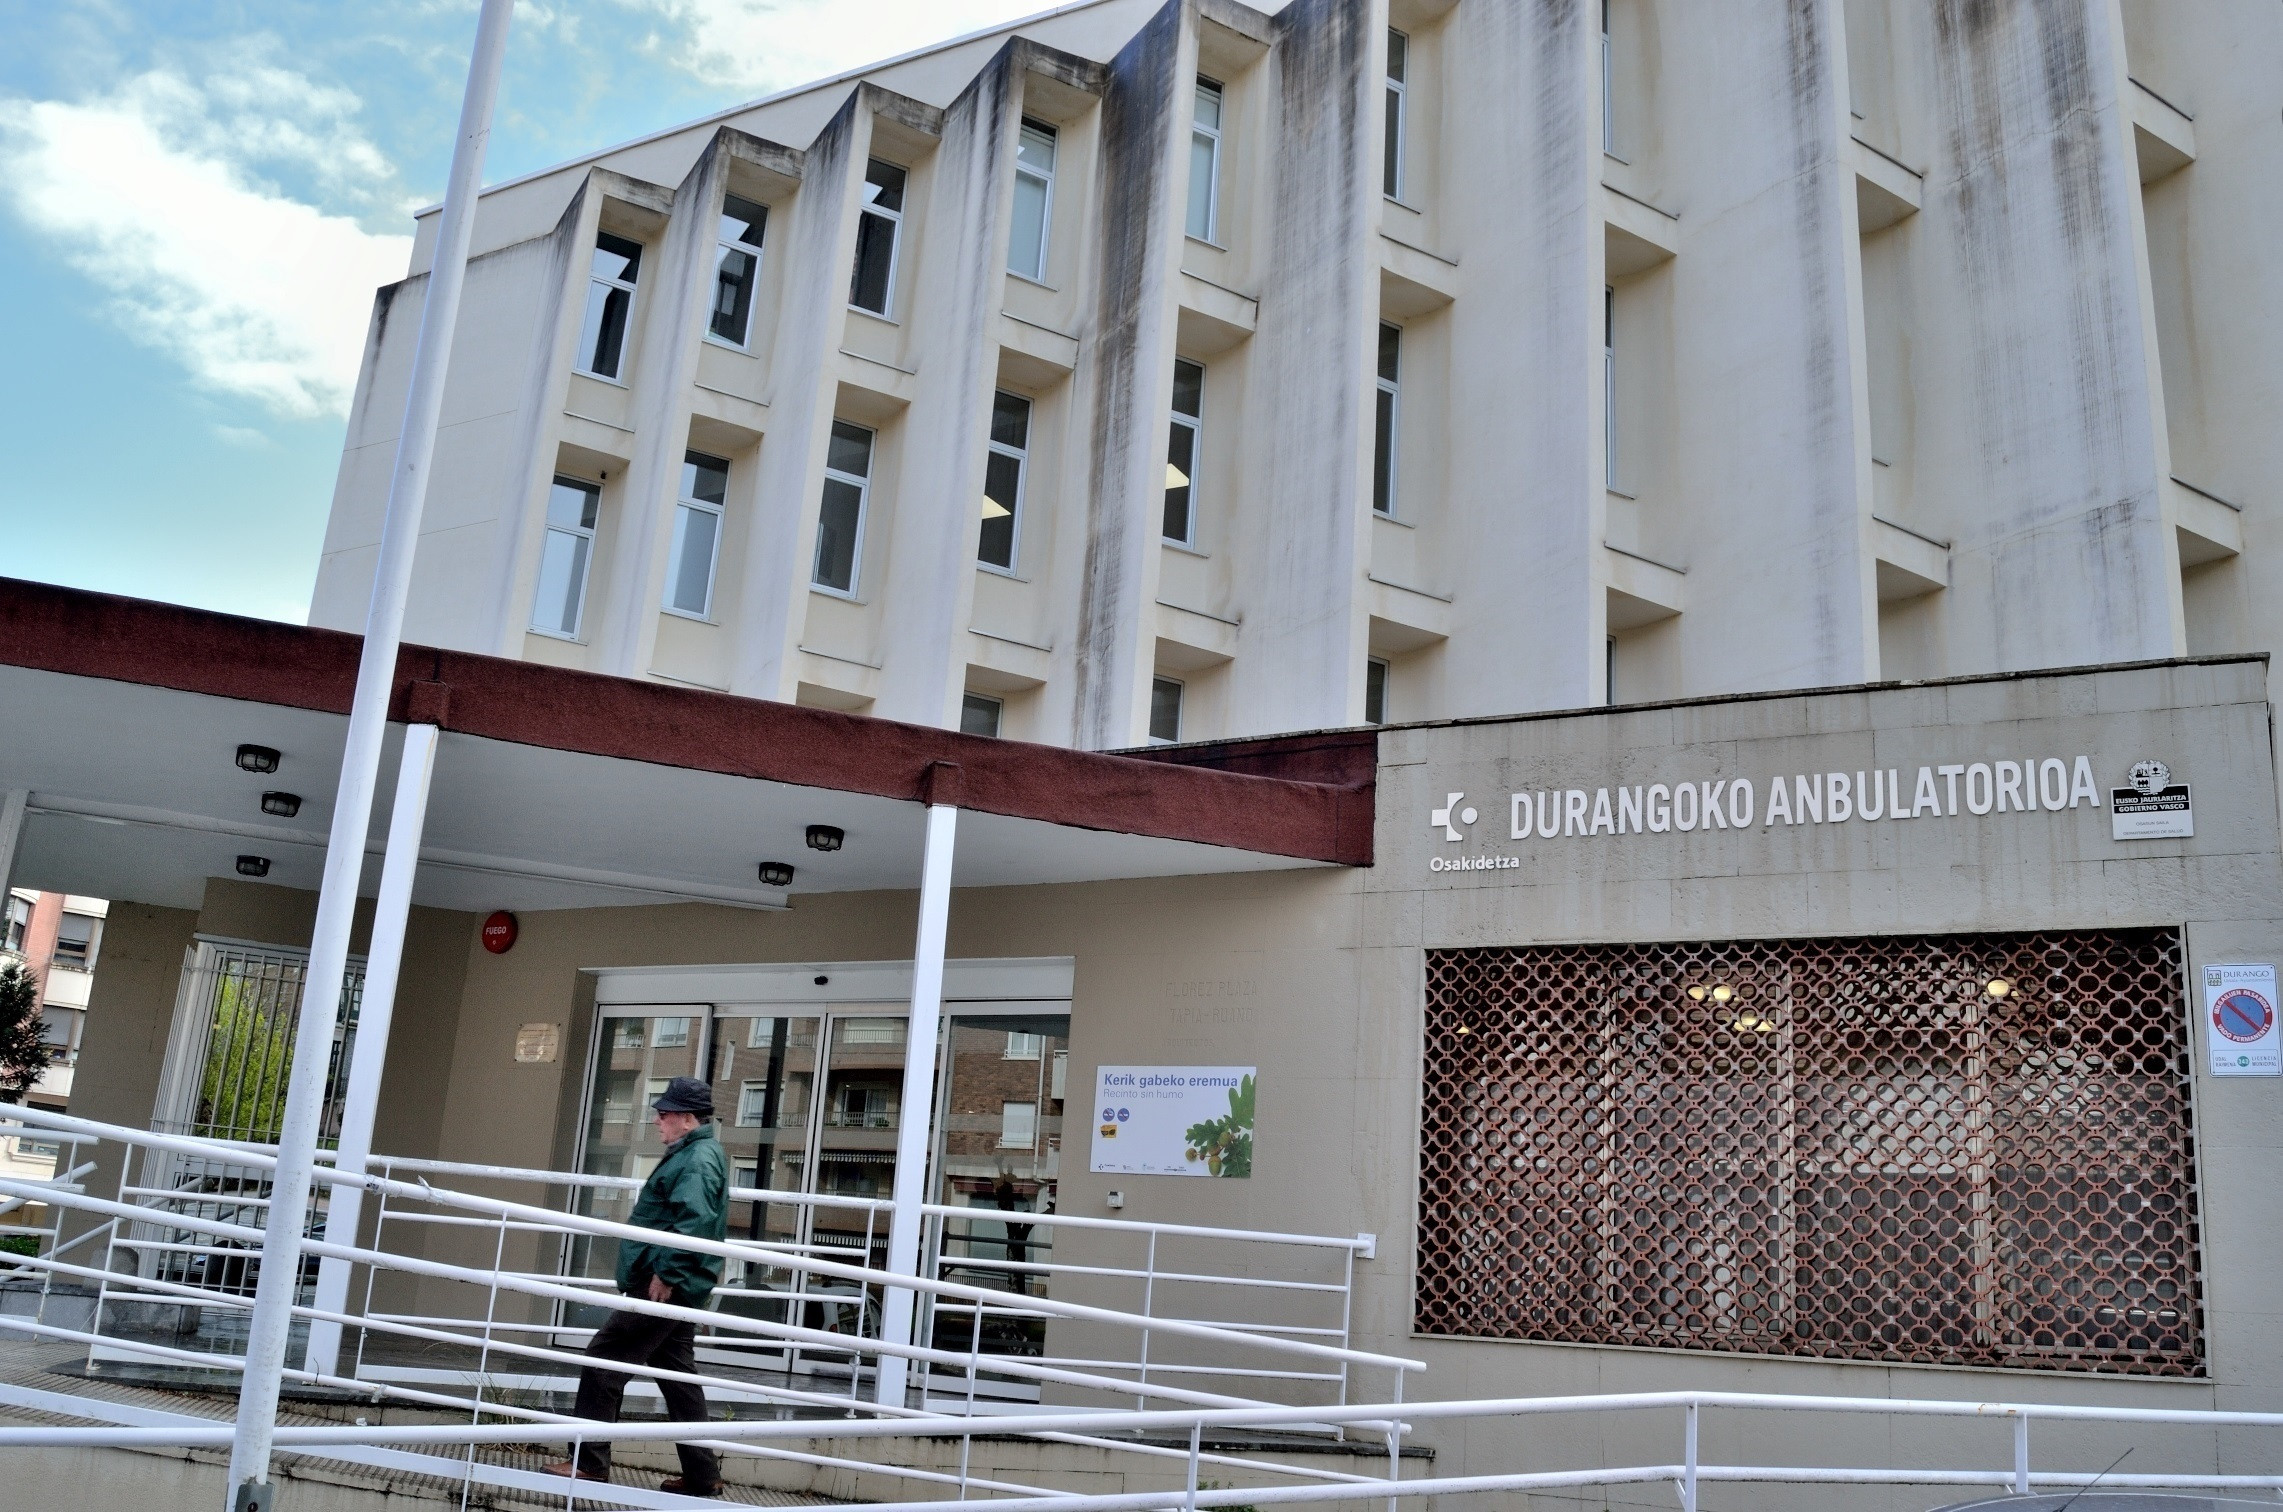 Fachada del ambulatorio de Durango, dentro de la red de Atención Primaria de Osakidetza. / Osakidetza